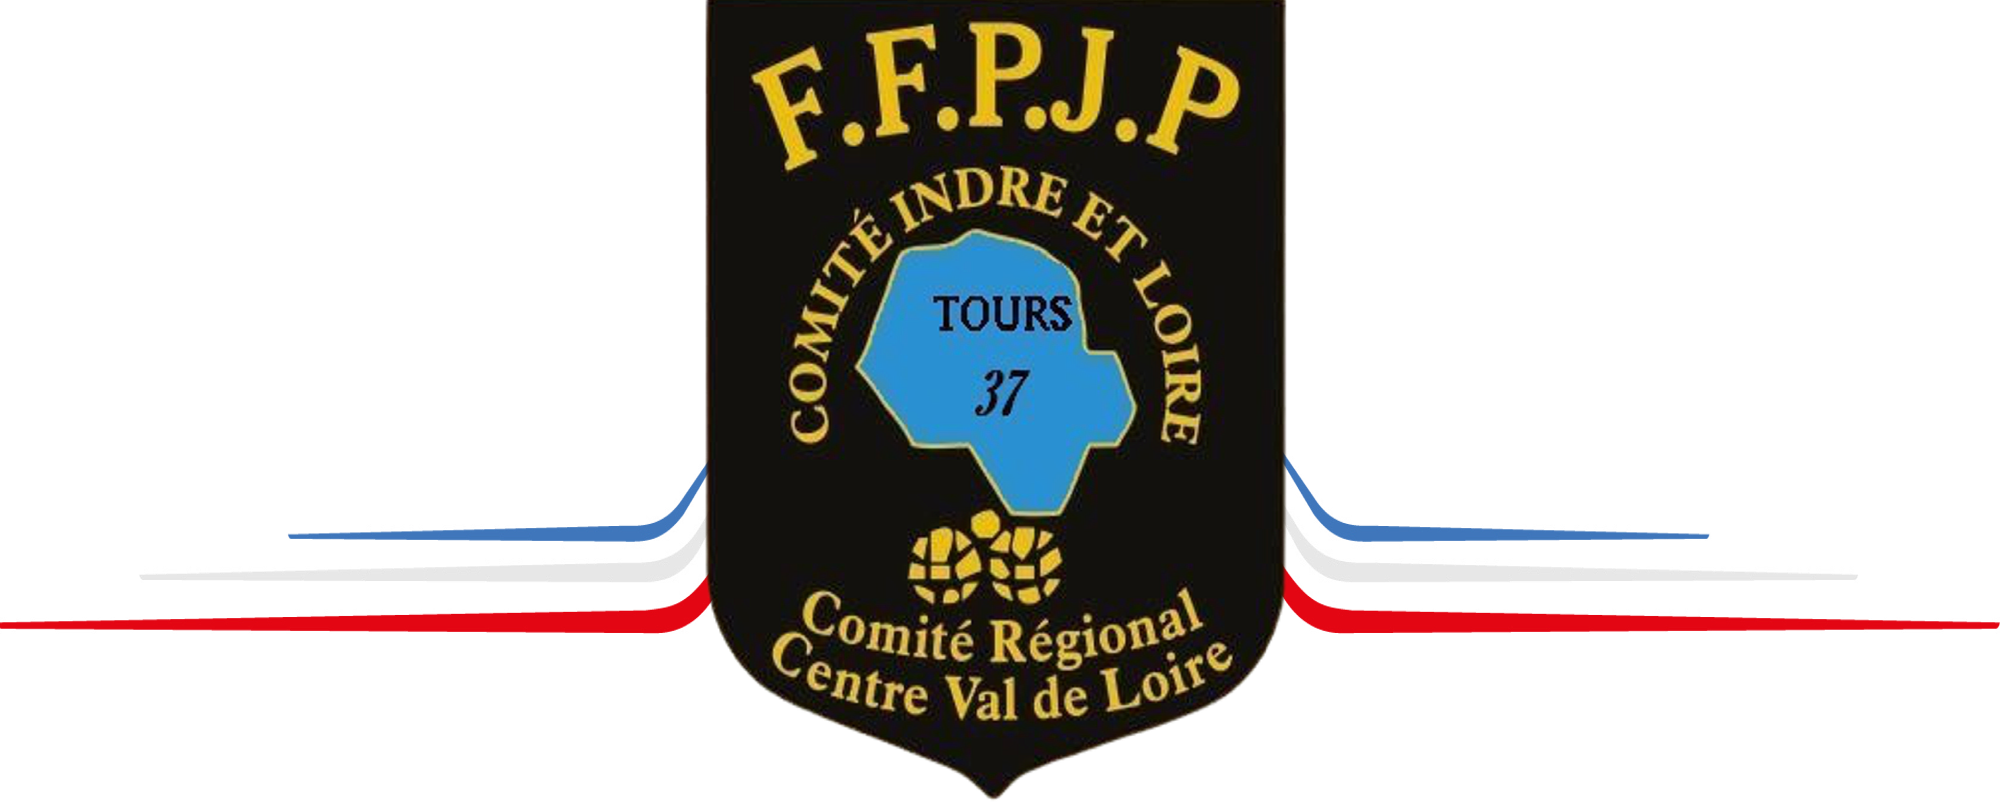 Indre & Loire Pétanque & Jeu Provençal